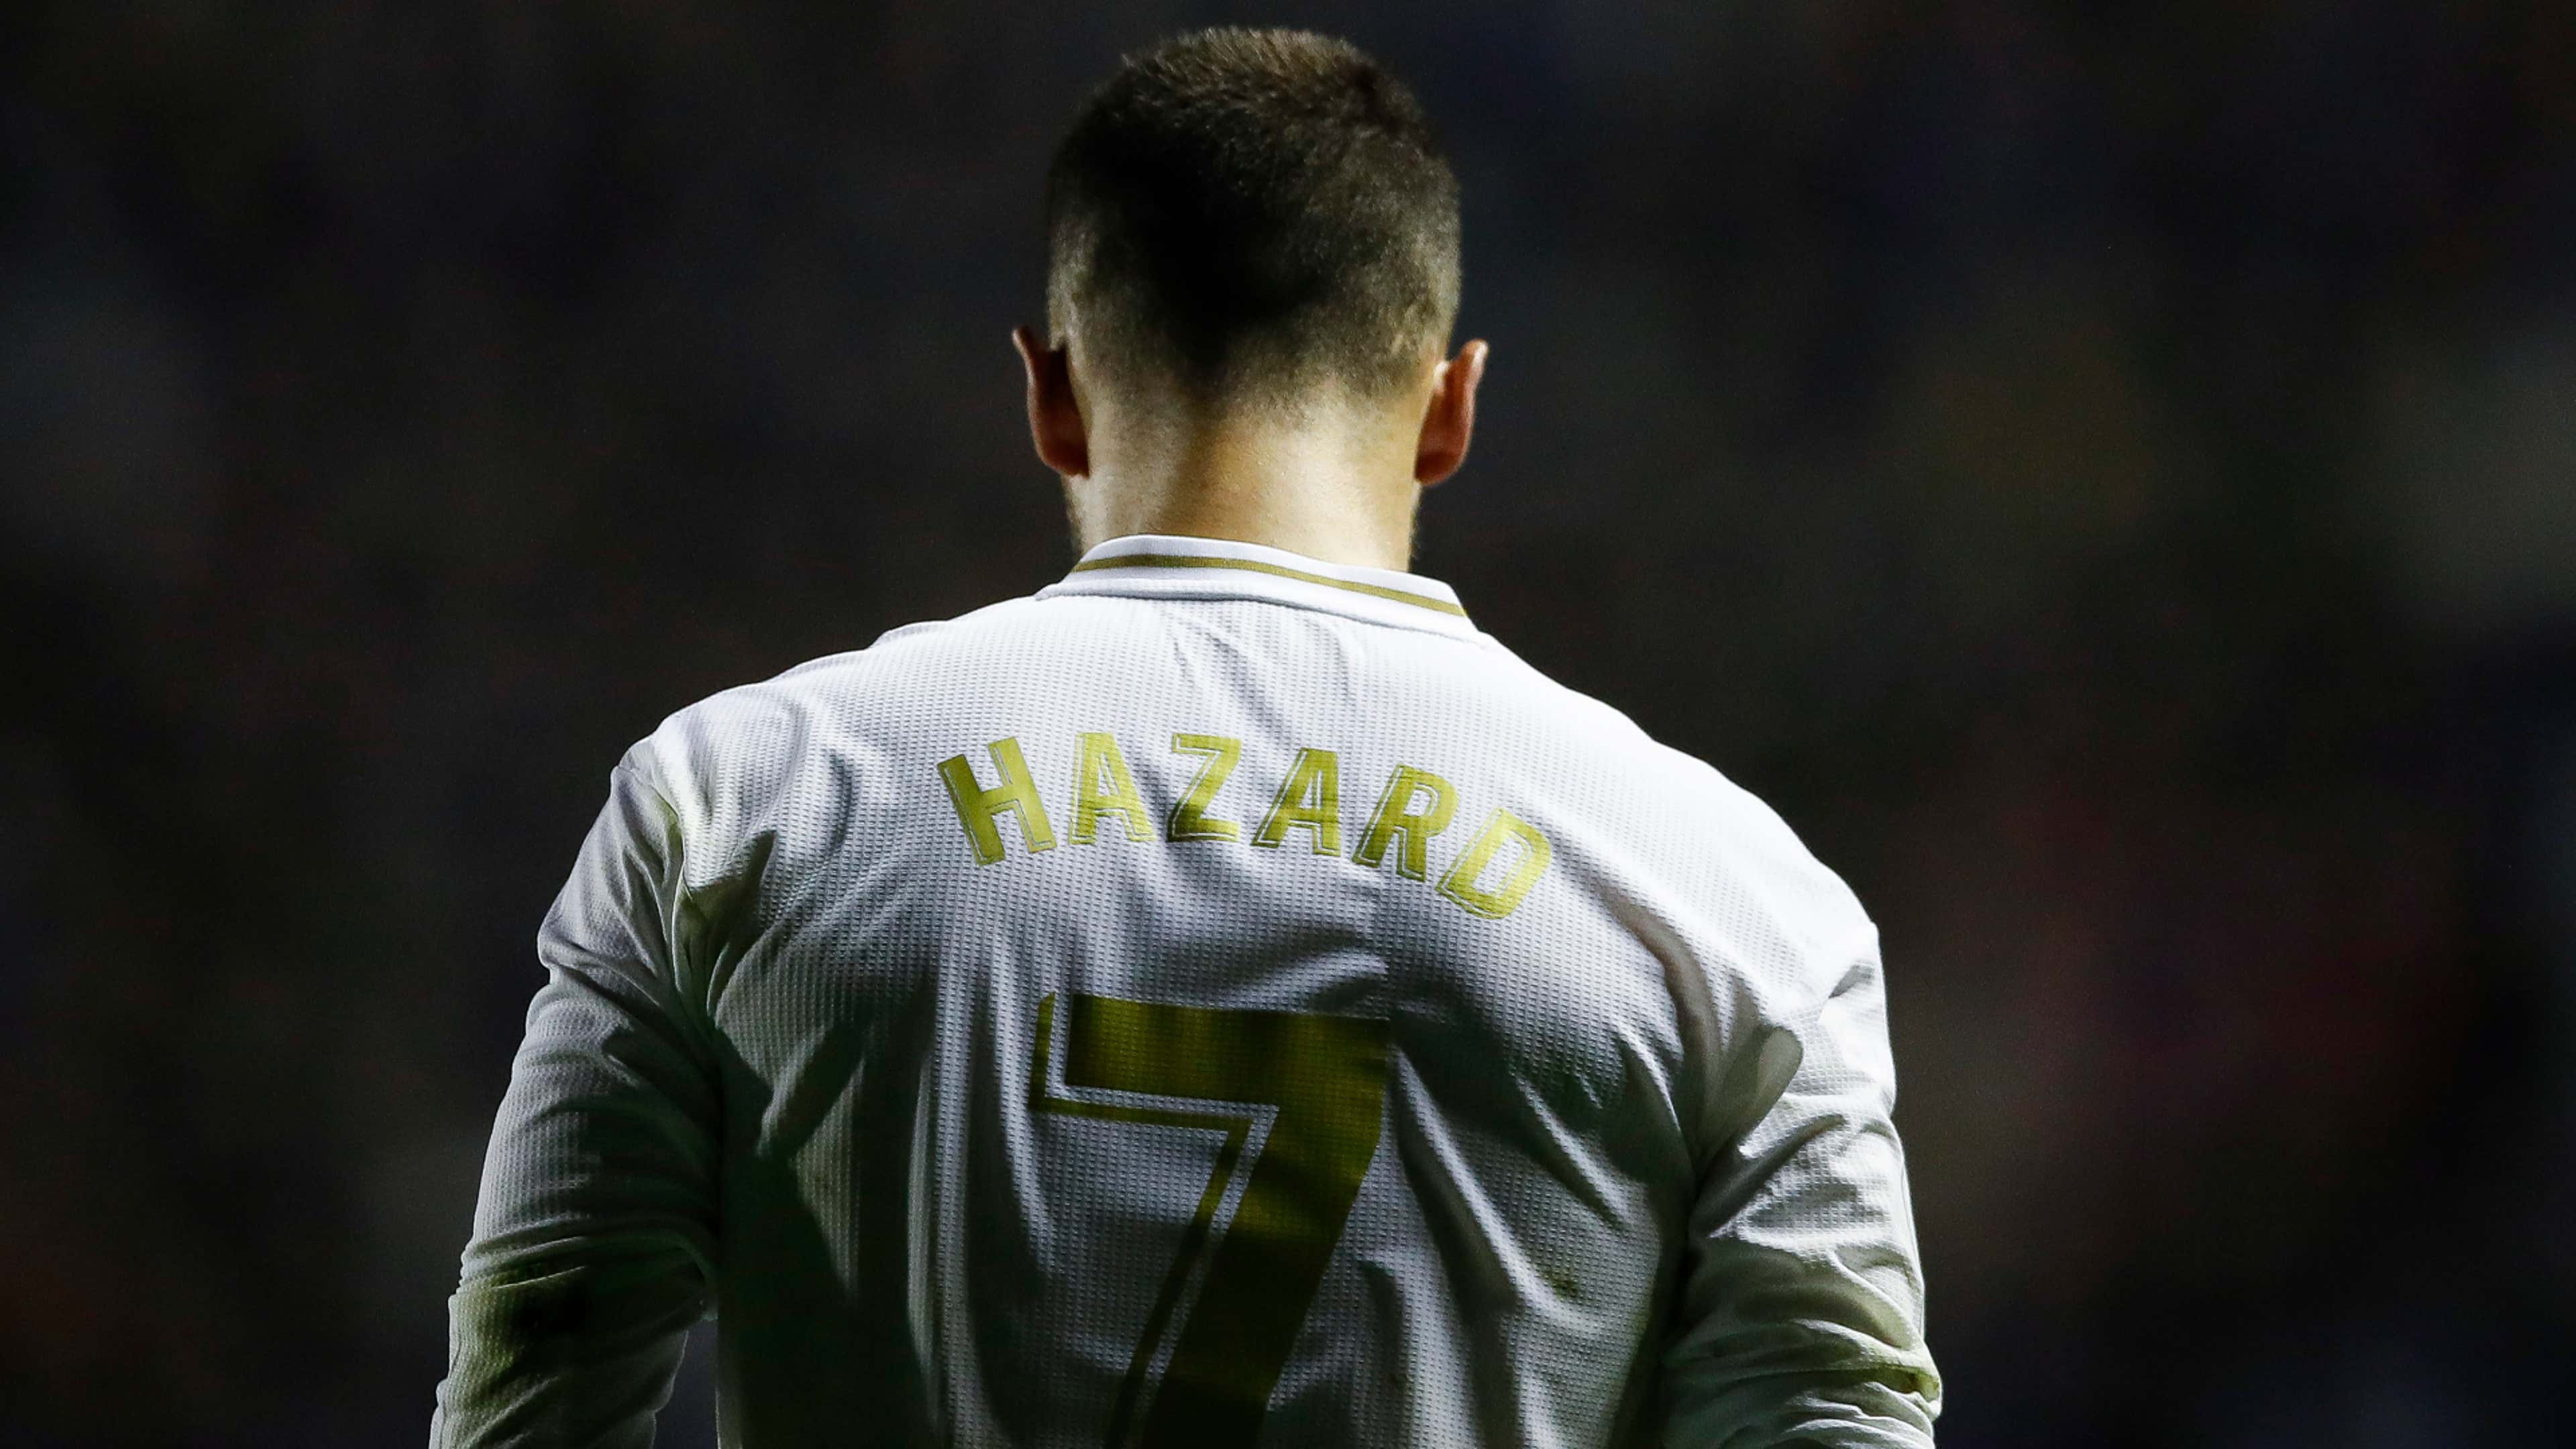 Eden Hazard Real Madrid